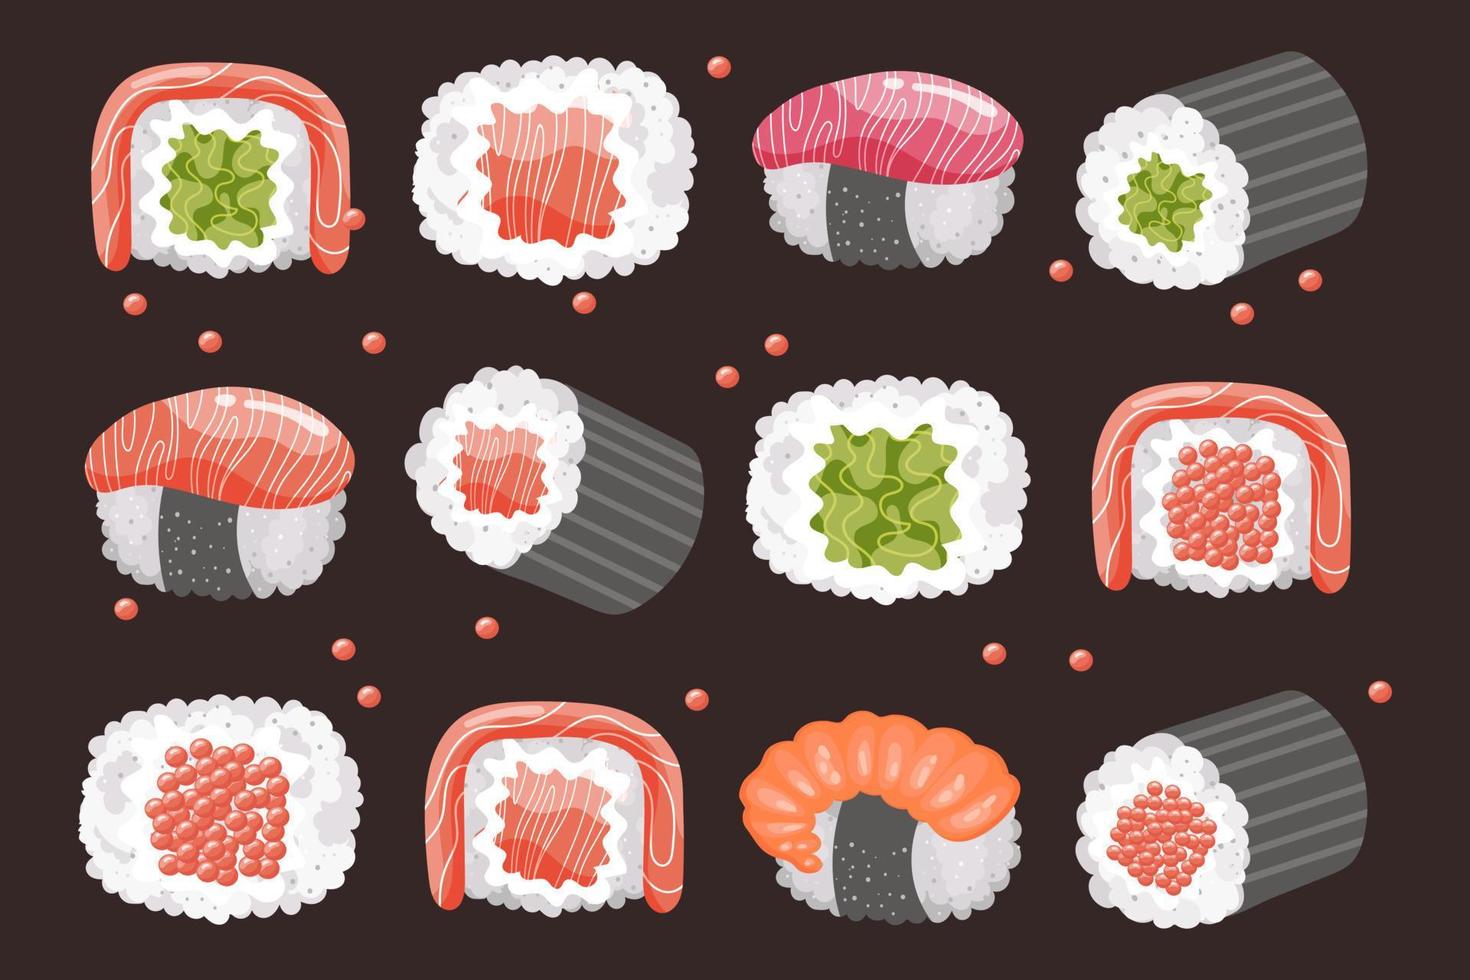 uppsättning av sushi rullar och ätpinnar på en mörk bakgrund. asiatisk mat ikoner, restaurang meny, vektor